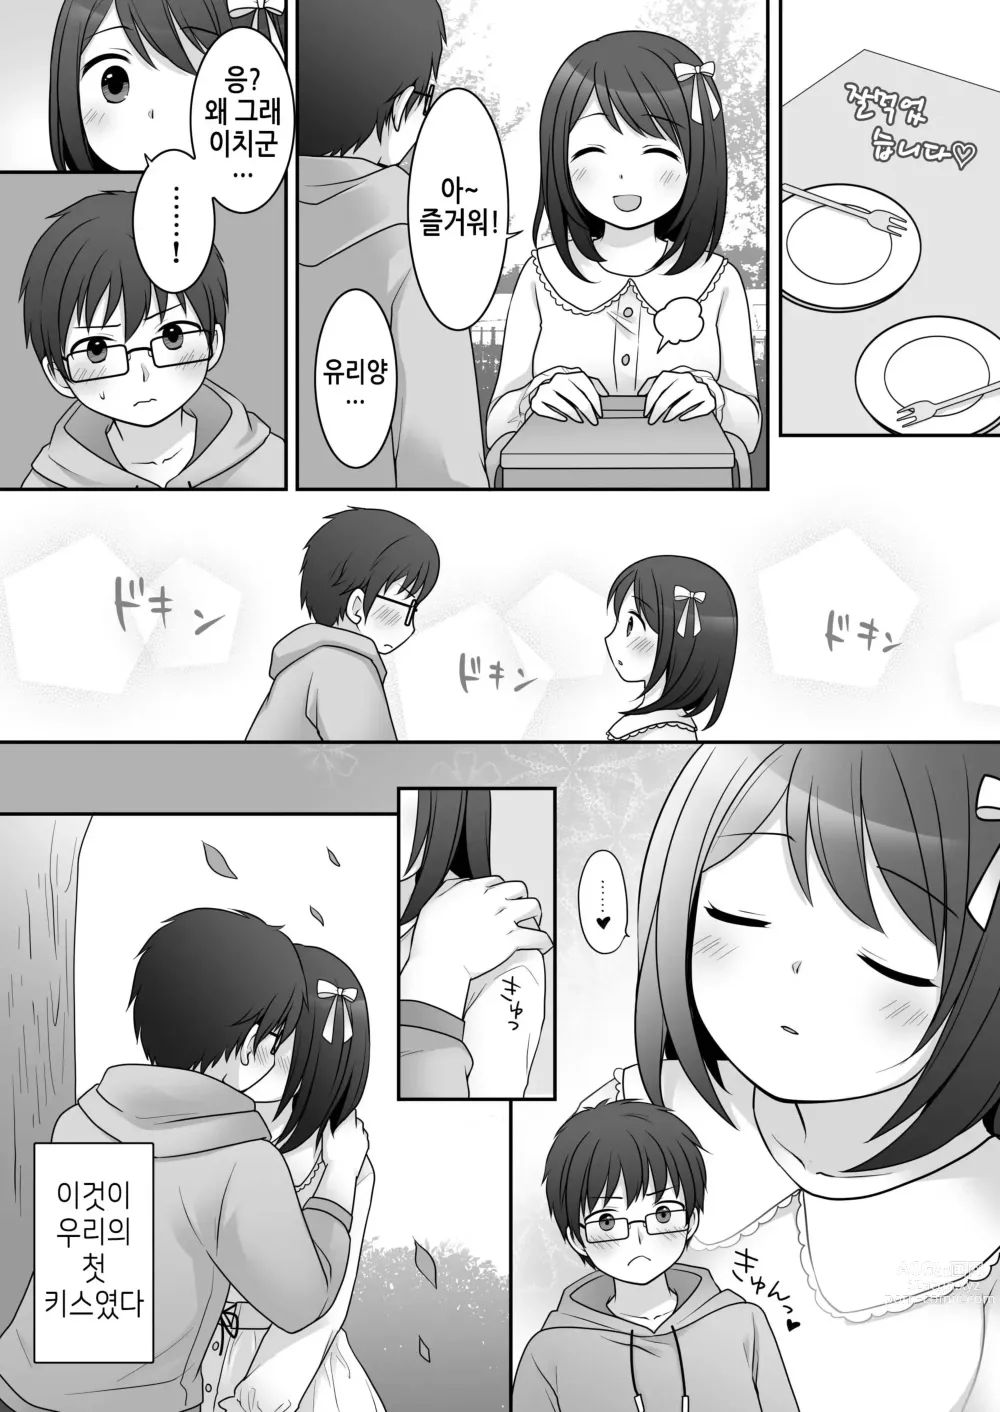 Page 4 of doujinshi 불량 in 그녀 내 여자친구의 몸뚱이는 불량남에게 납치되었다.